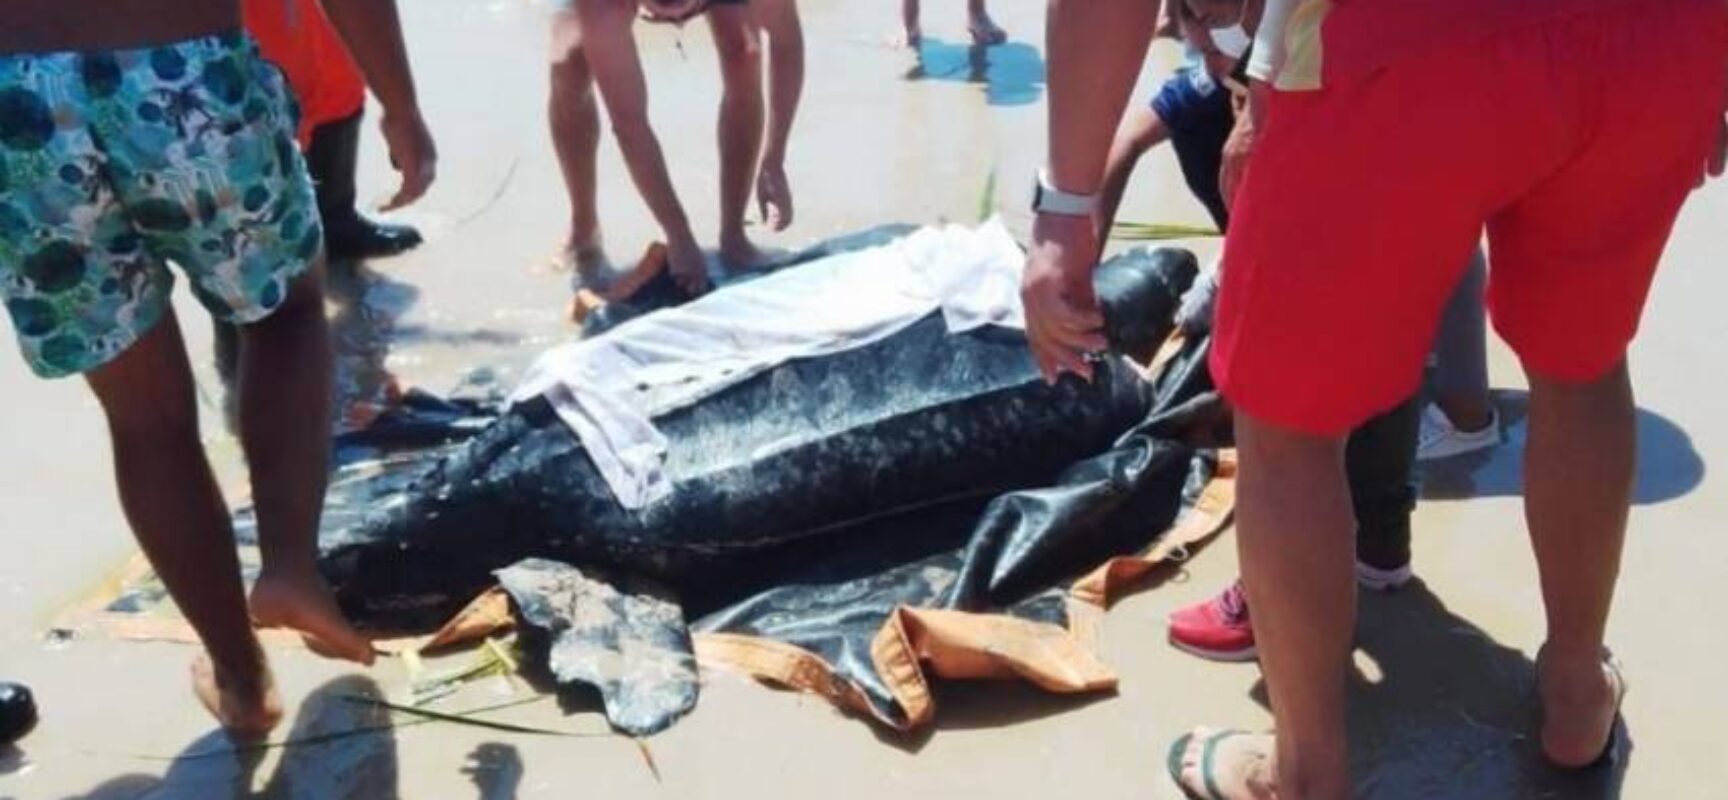 Tartaruga com mais de 200 kg é resgatada em praia no distrito de Olivença, Ilhéus